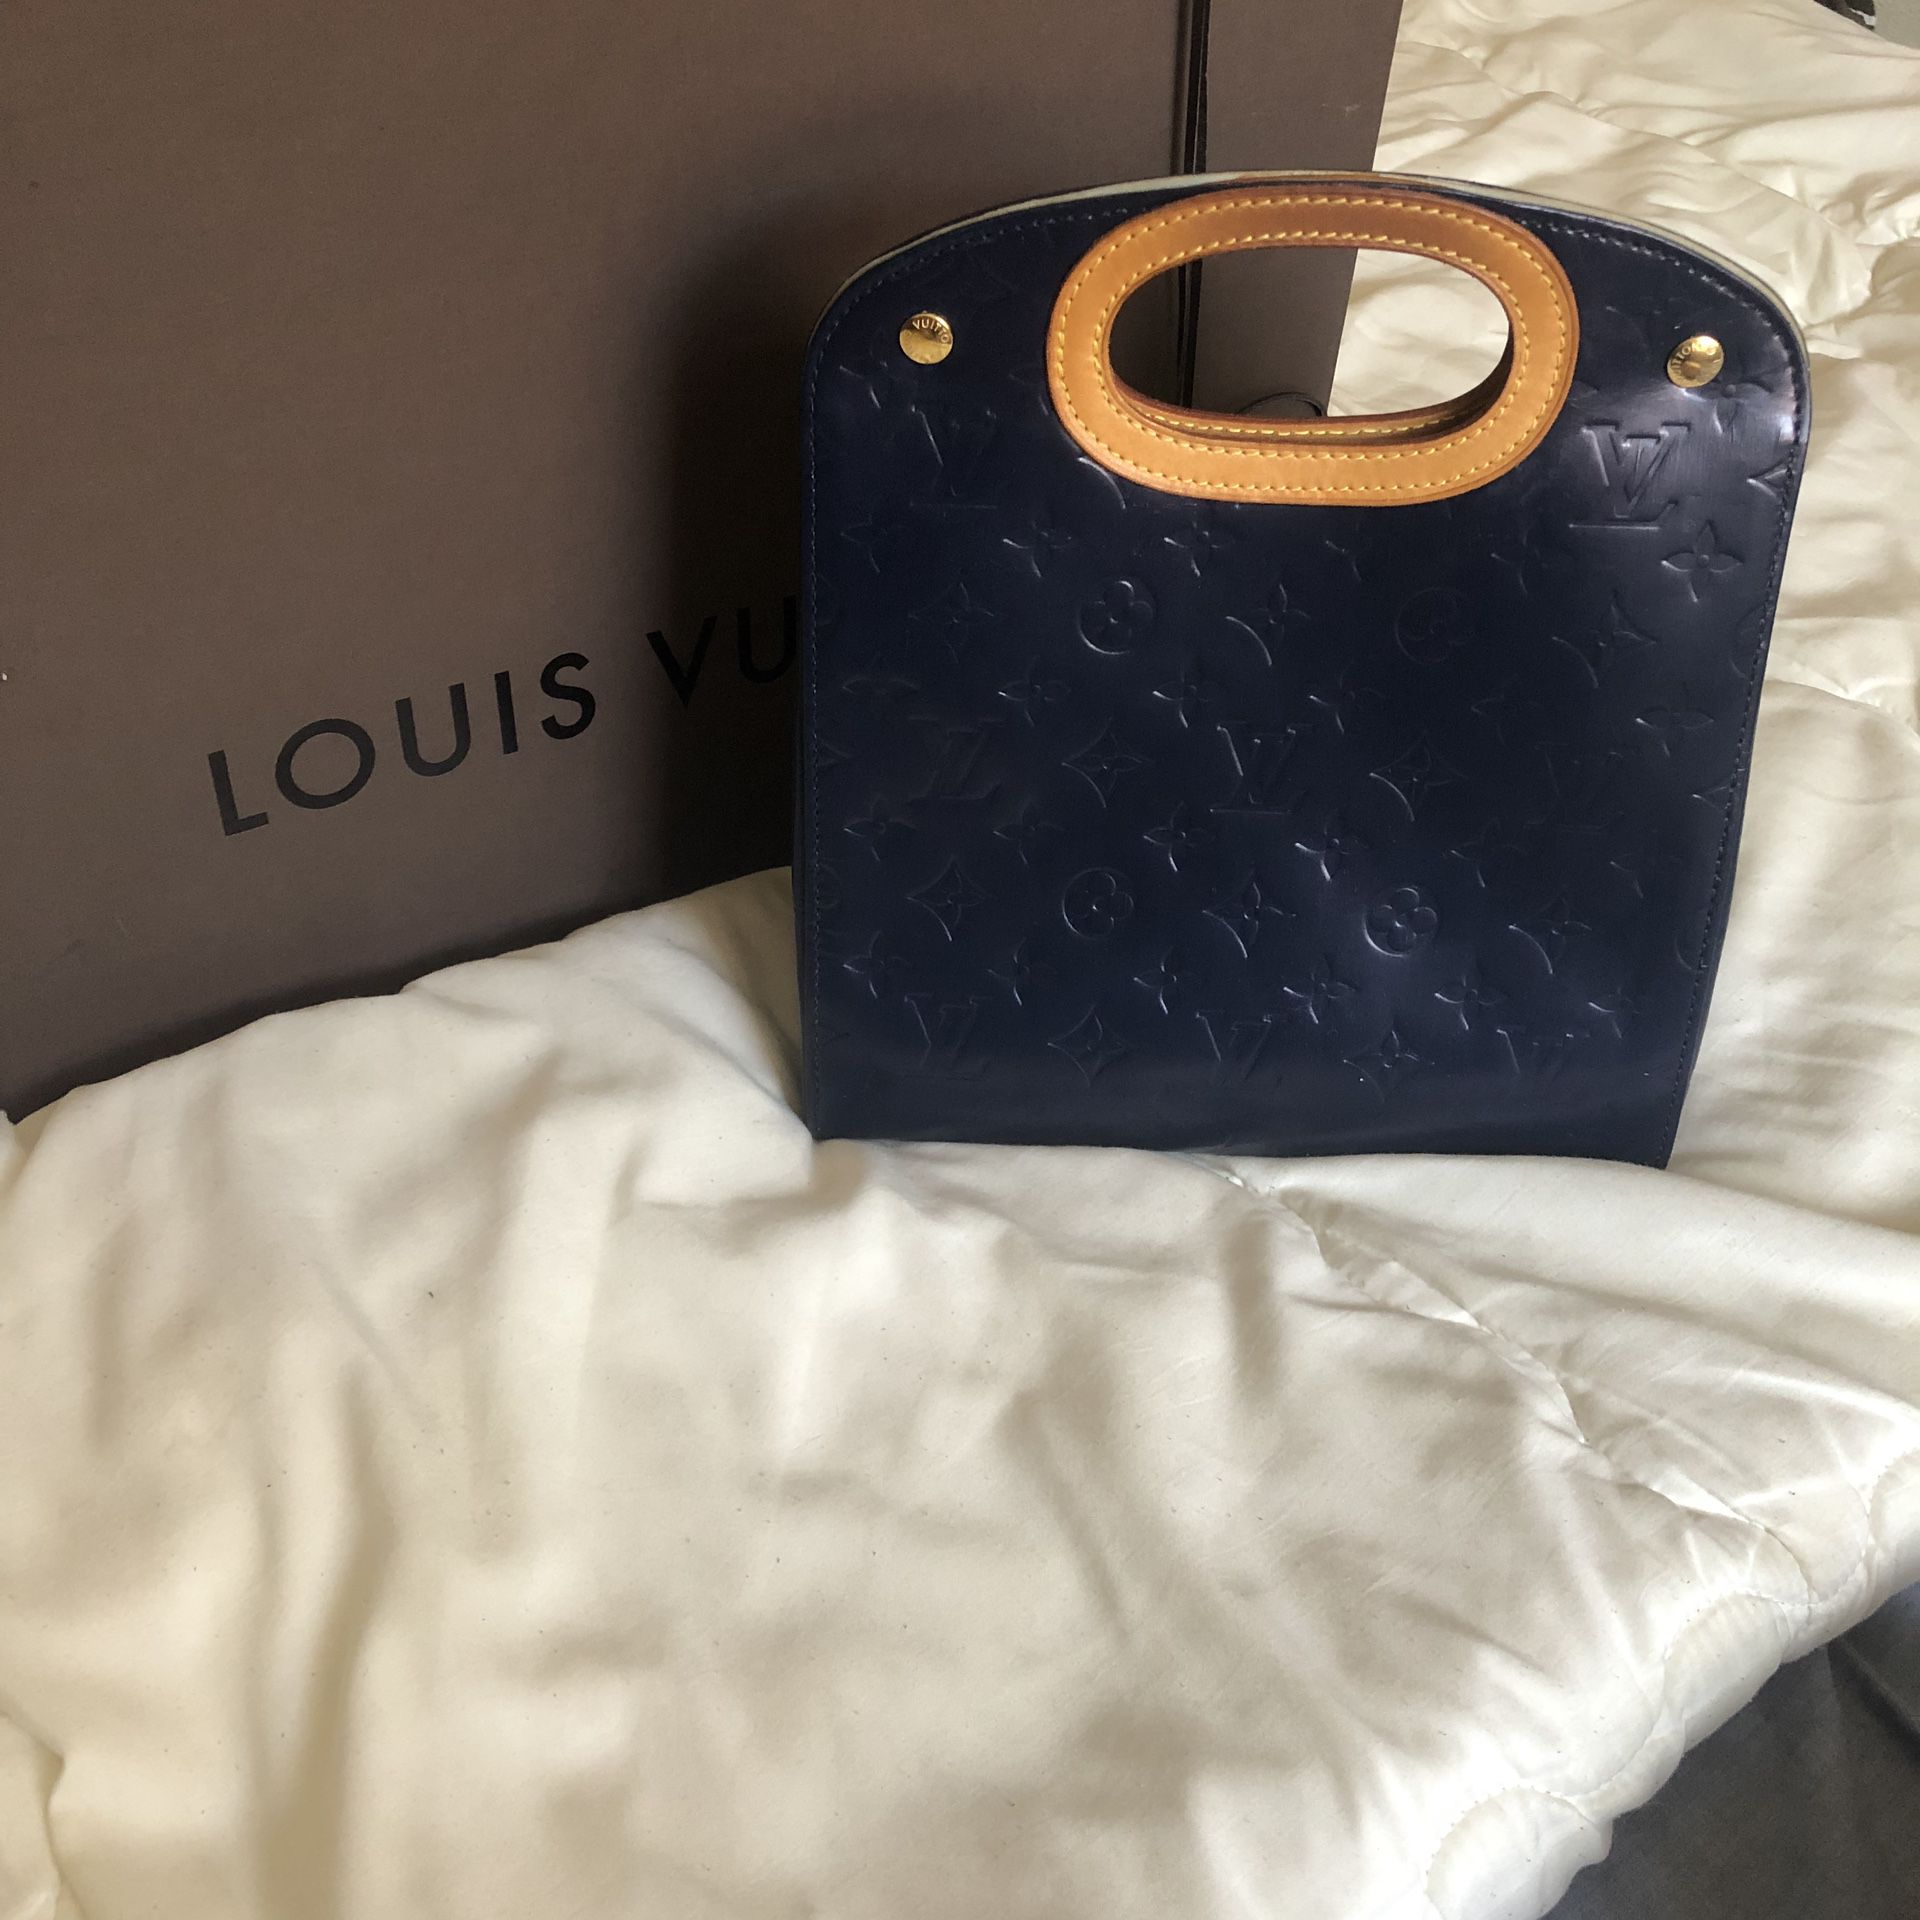 Louis Vuitton Vernis clutch